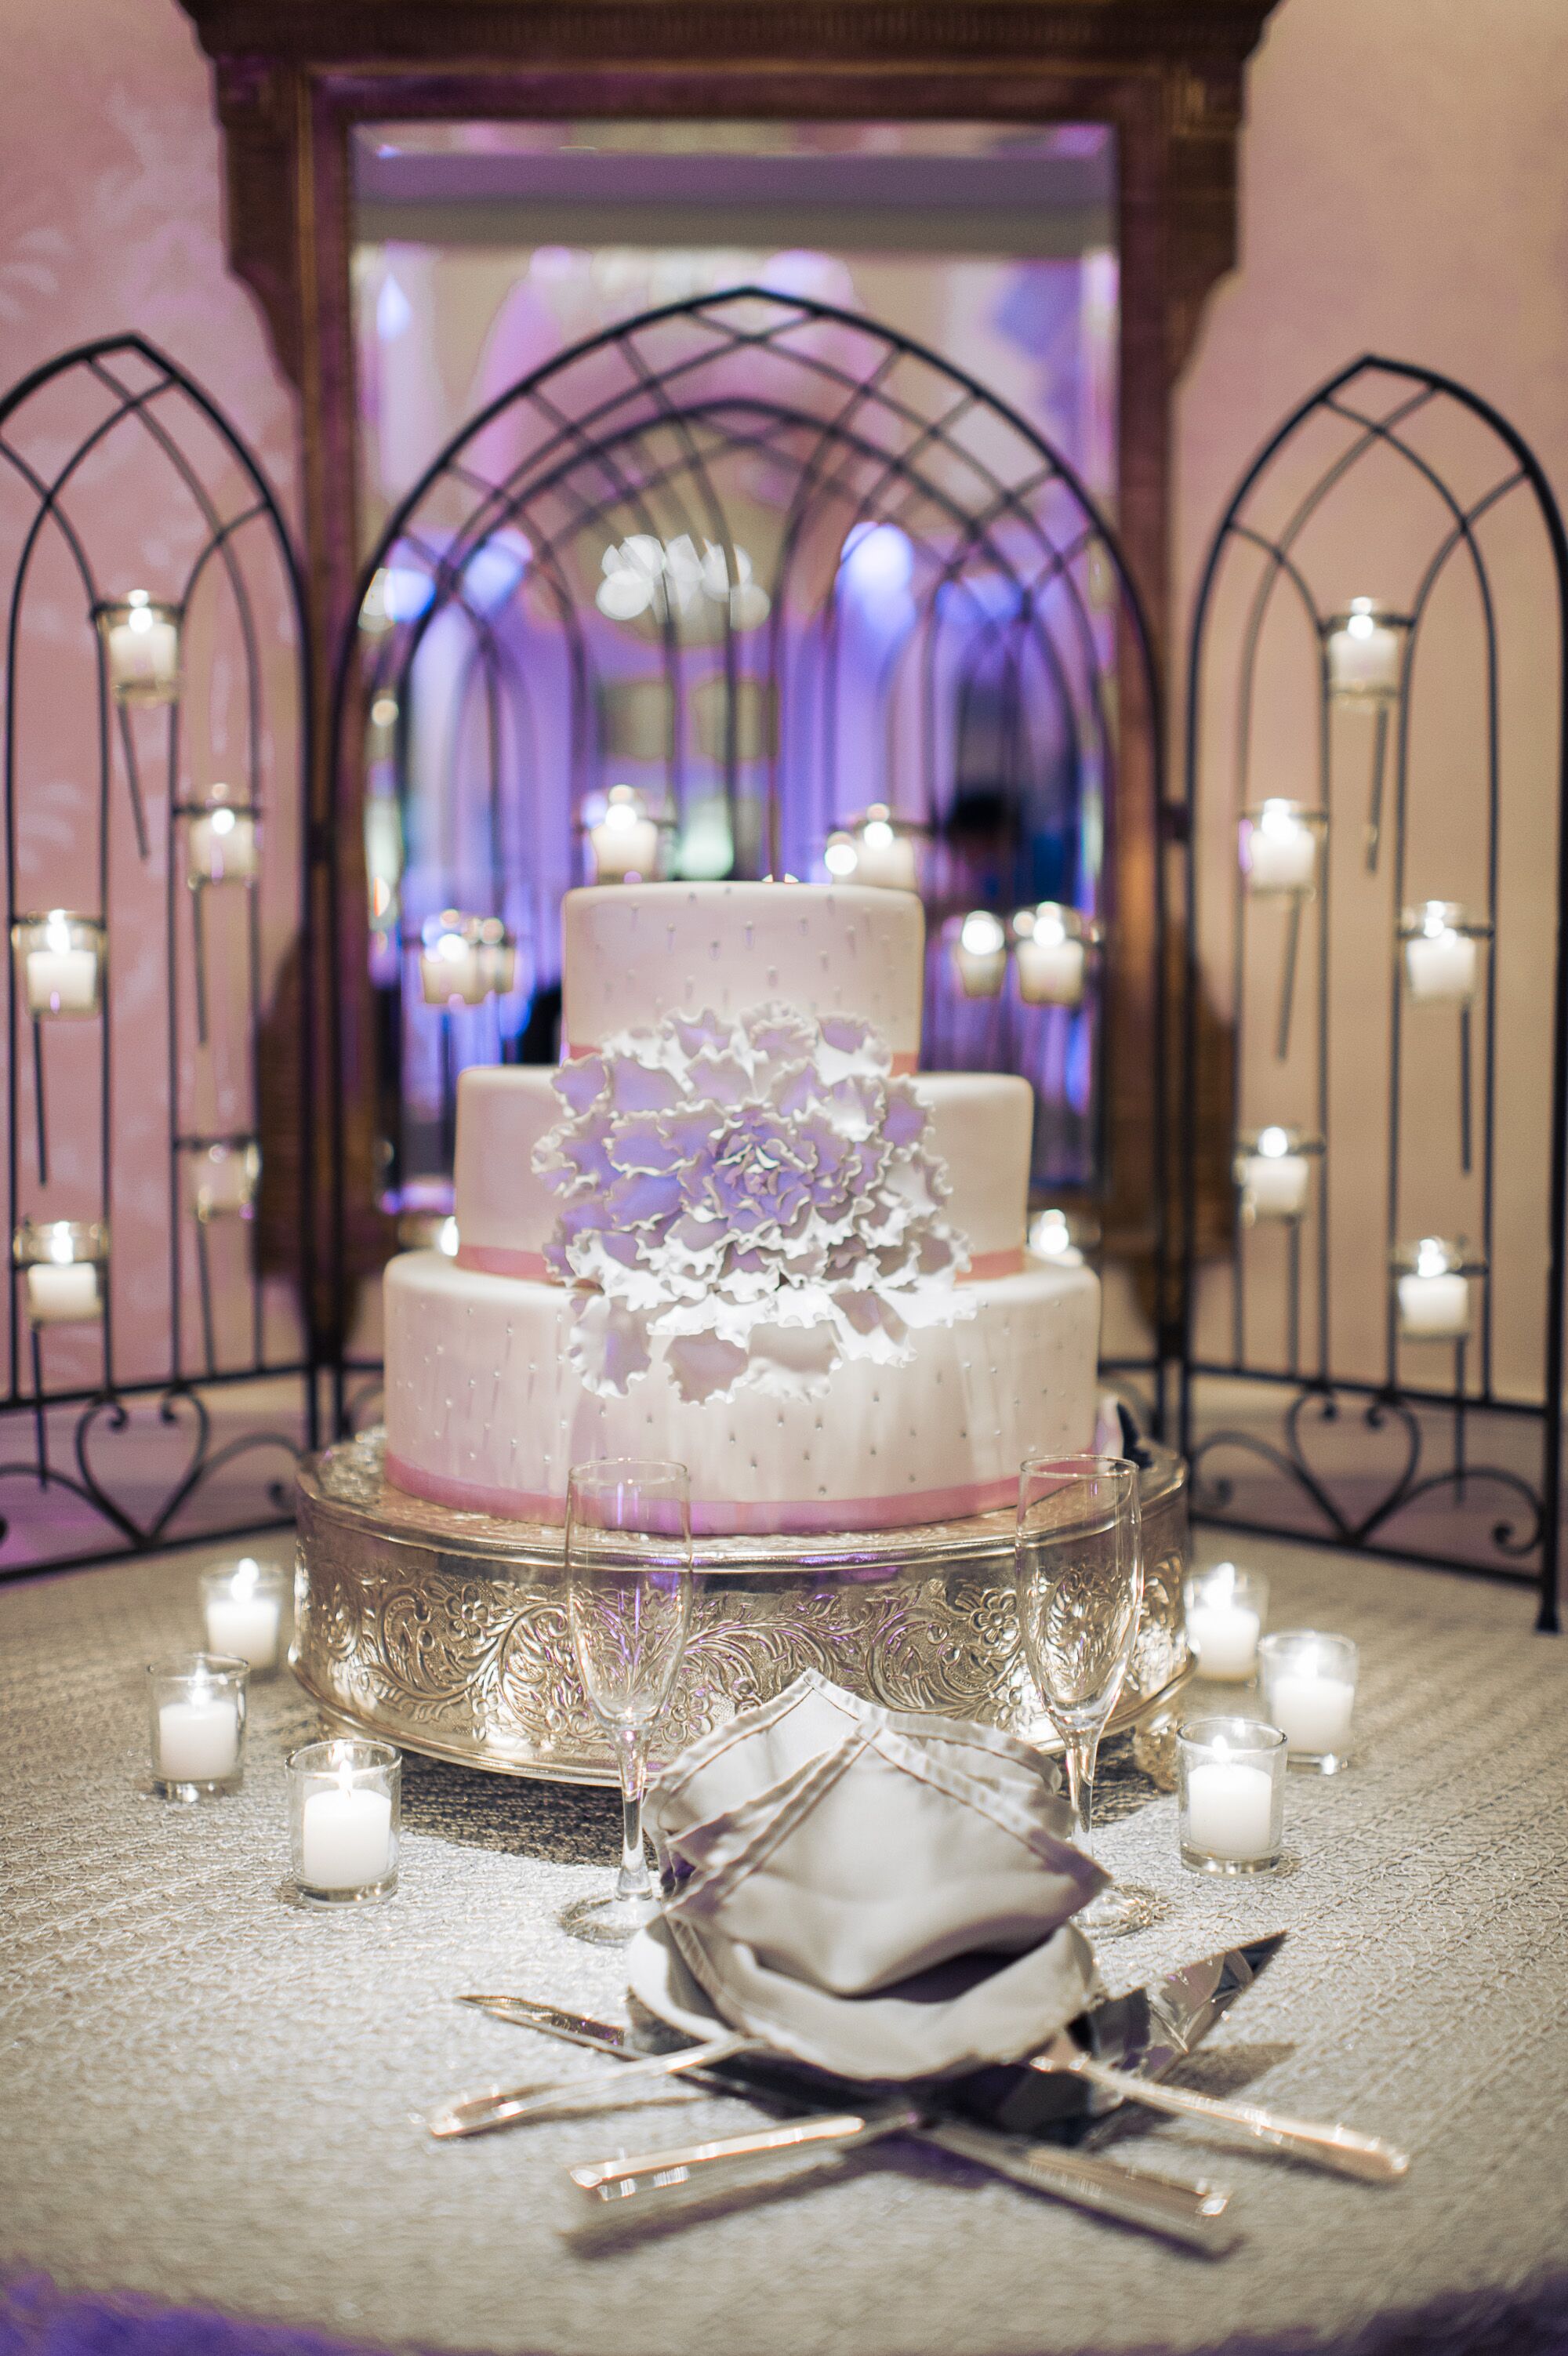 Beautiful Wedding Cake Against a Candlelit Backdrop